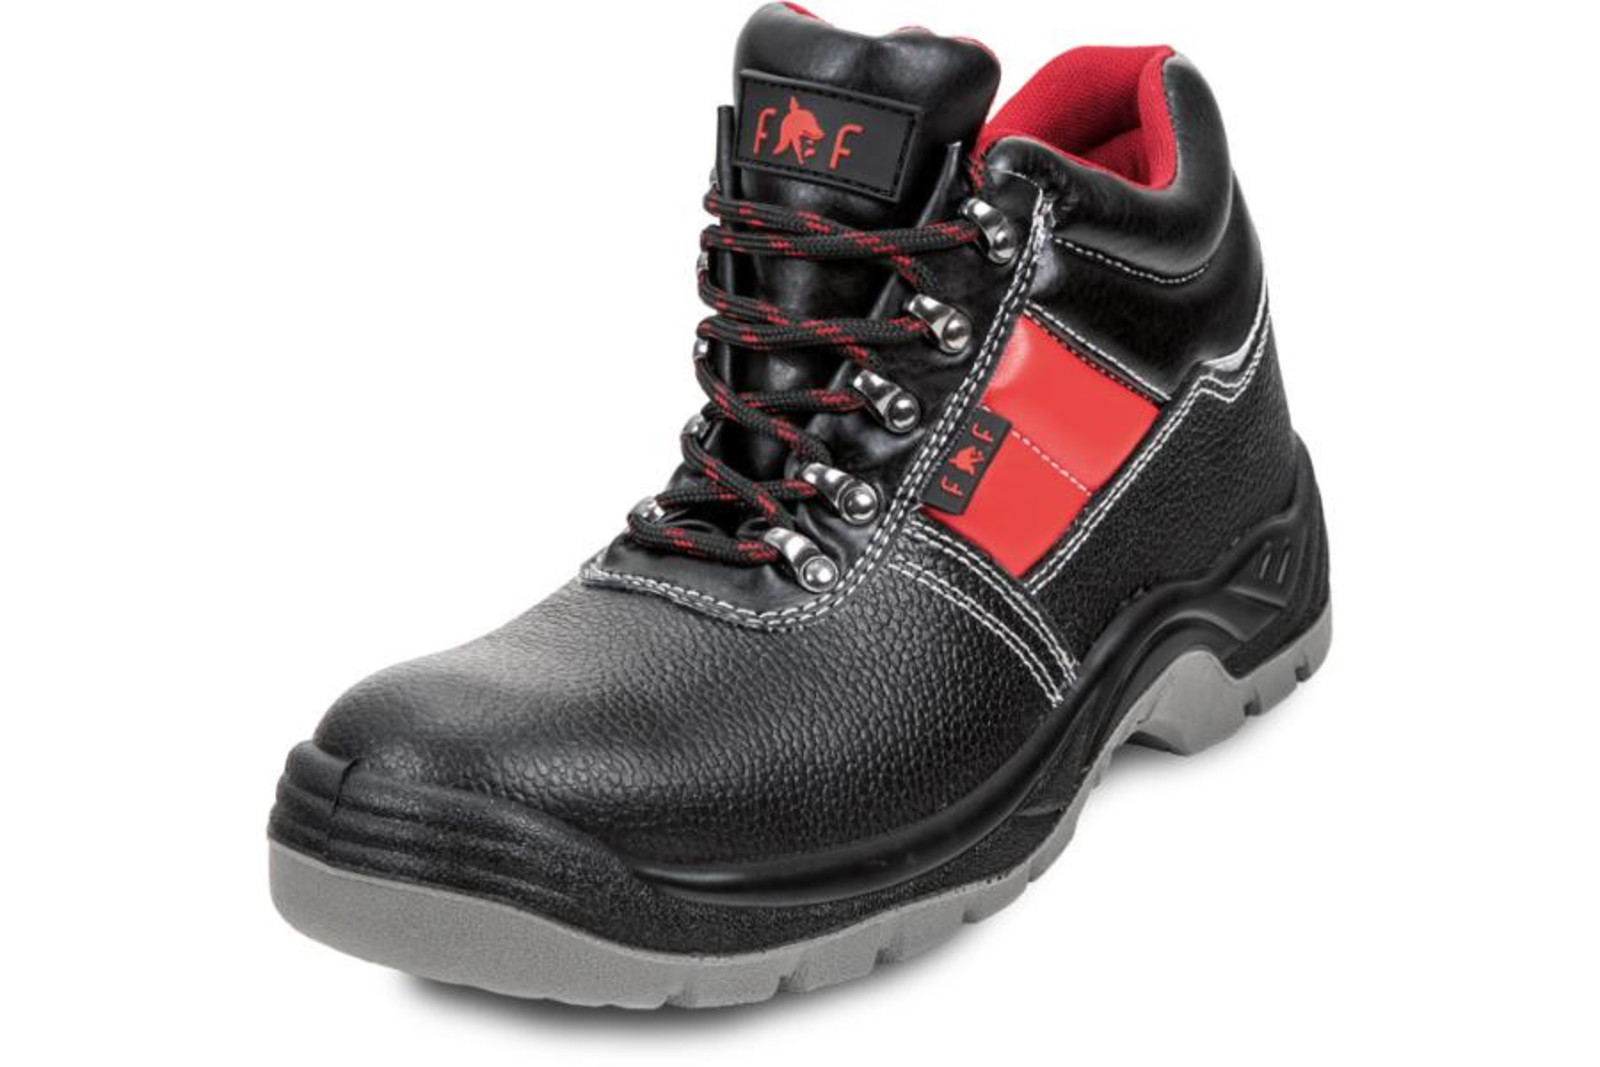 Bezpečnostná obuv SC 03-003 S3 - veľkosť: 44, farba: čierna